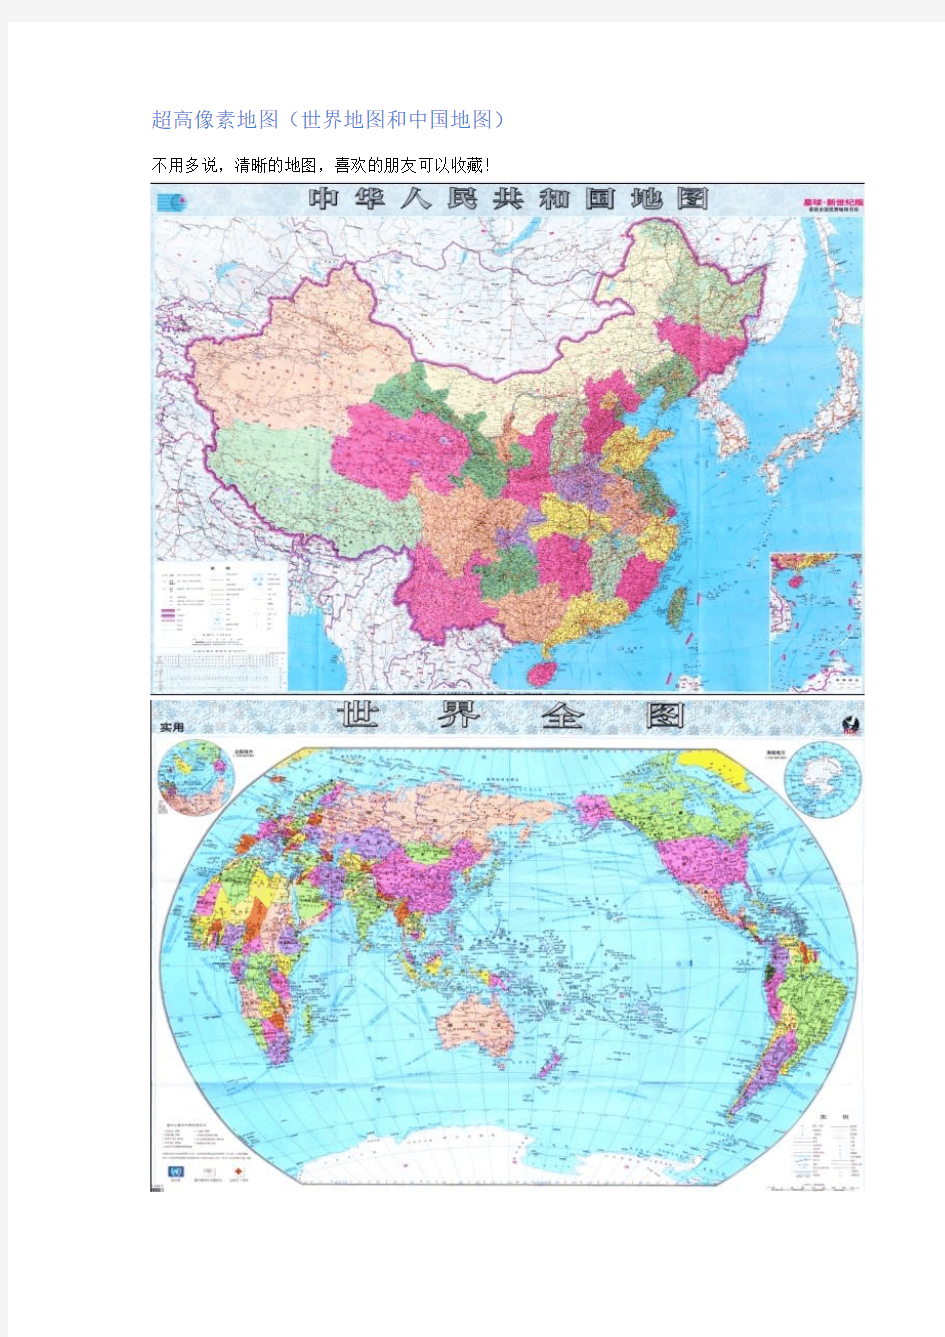 超高像素地图(世界地图和中国地图